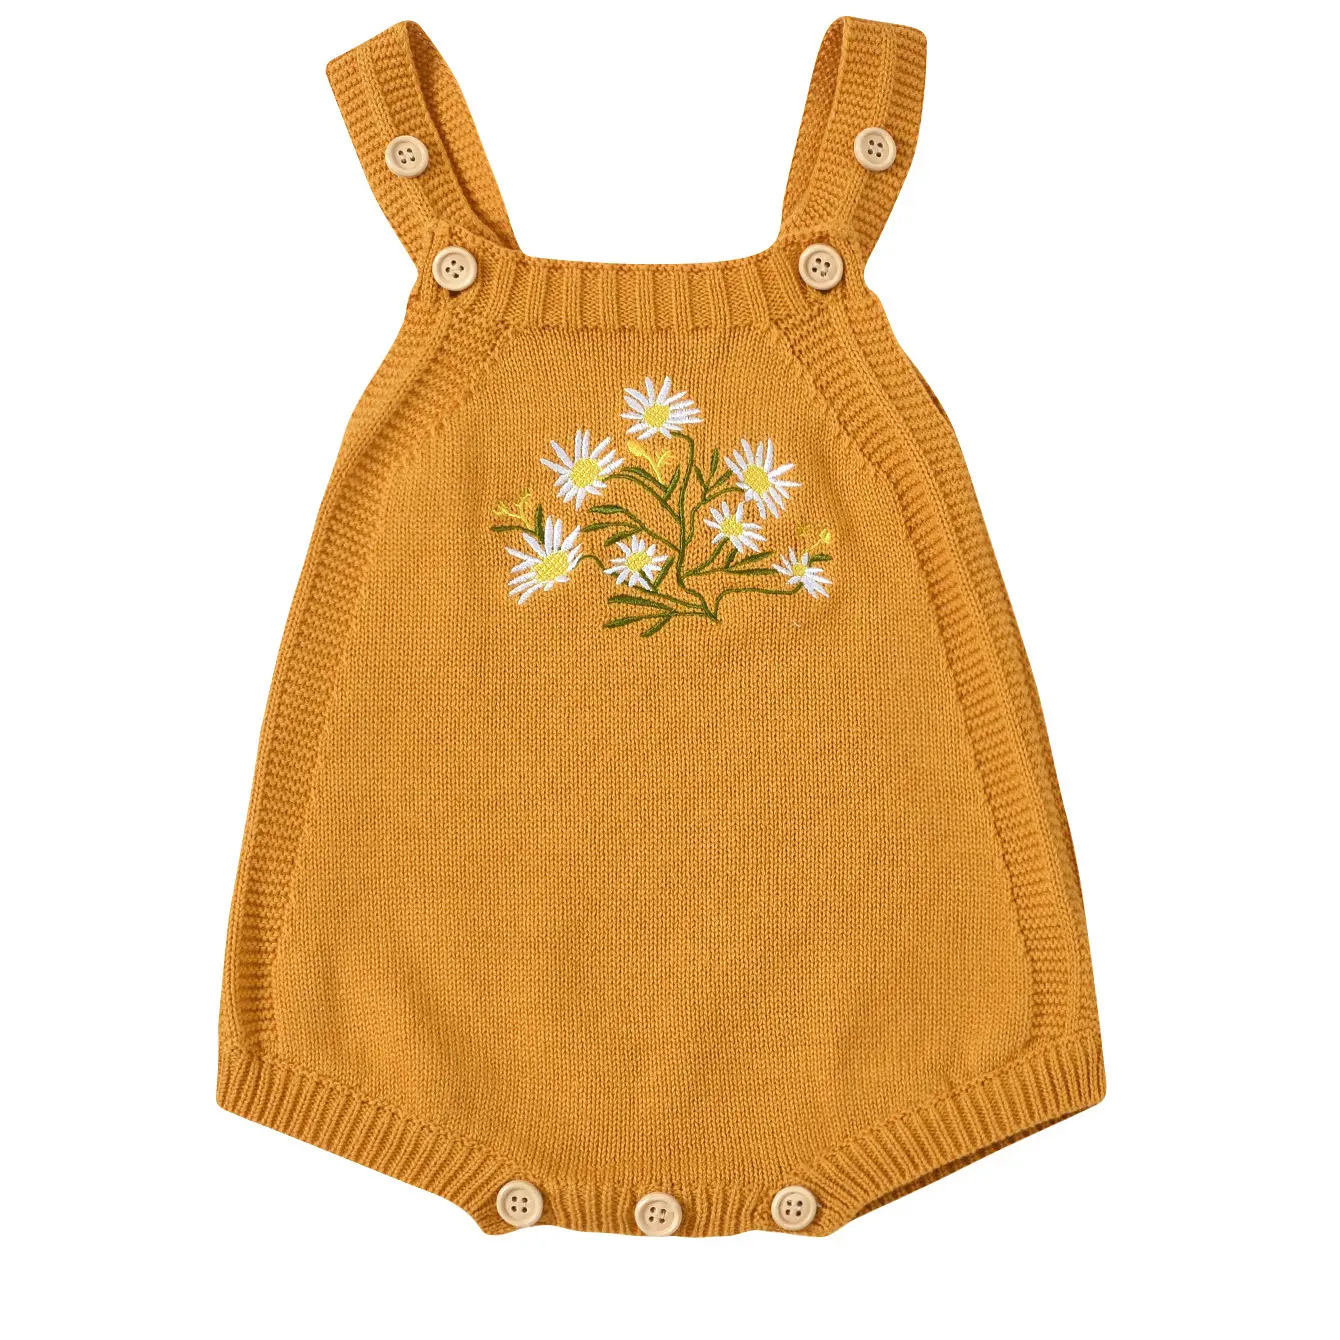 Macacão de bebê com bordado floral para bebês, macacão de malha 100% algodão para recém-nascidos sem mangas, macacão de malha personalizado